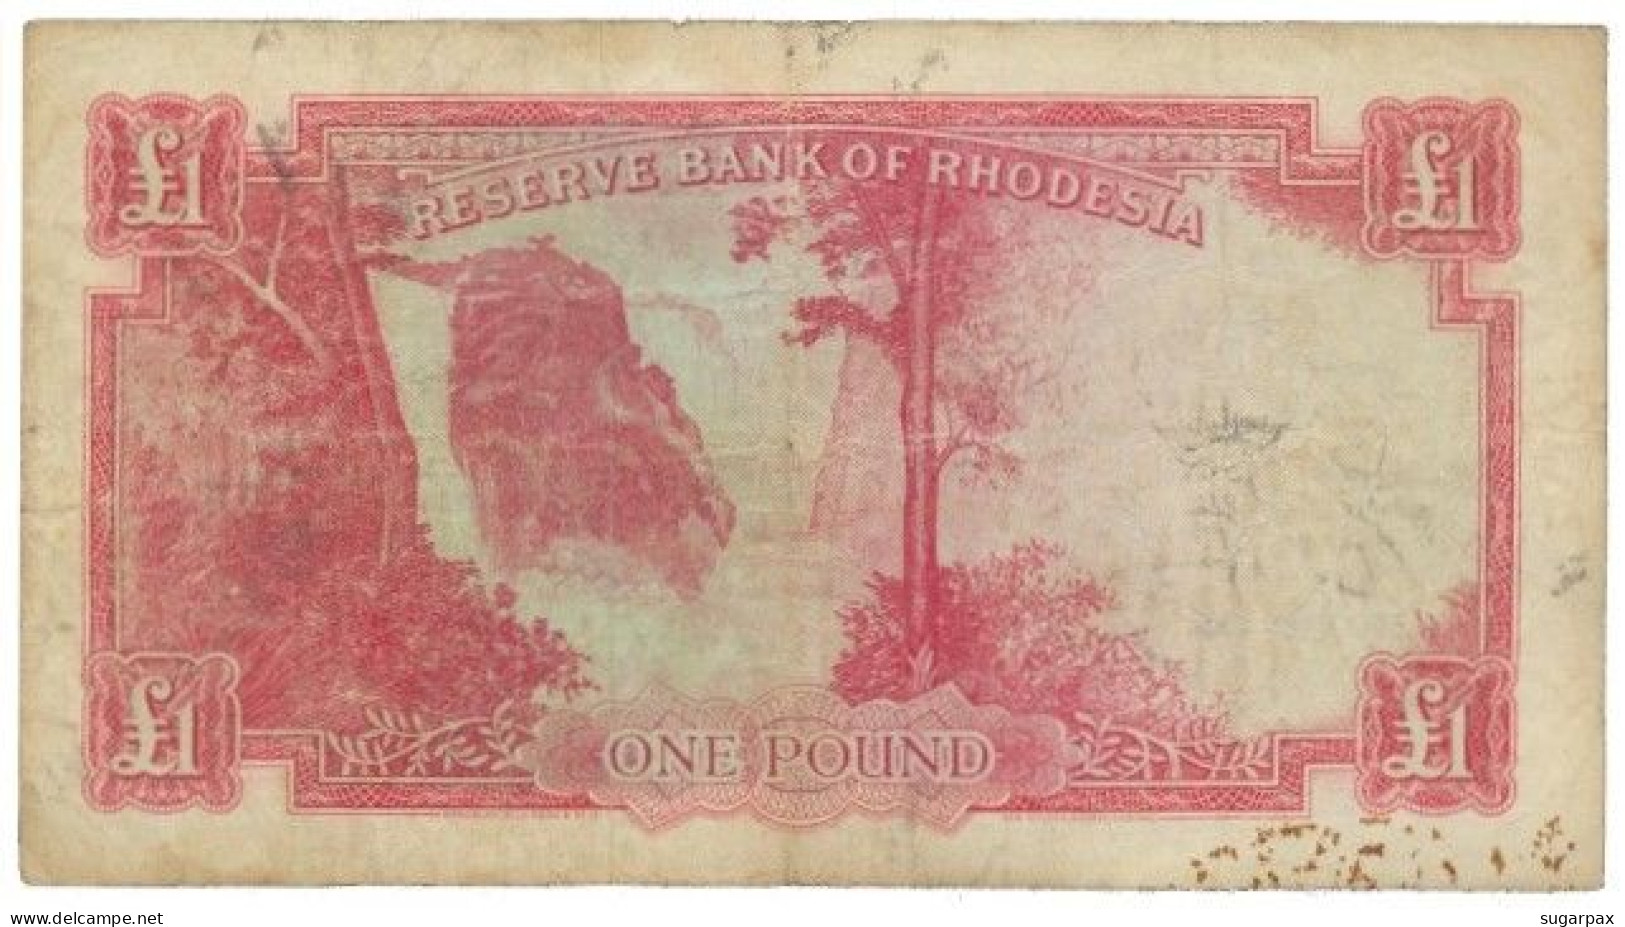 RHODESIA - 1 Pound - 21.09.1964 - Pick 25 - RRRRRRRRRR - Queen Elizabeth II - Rhodesia